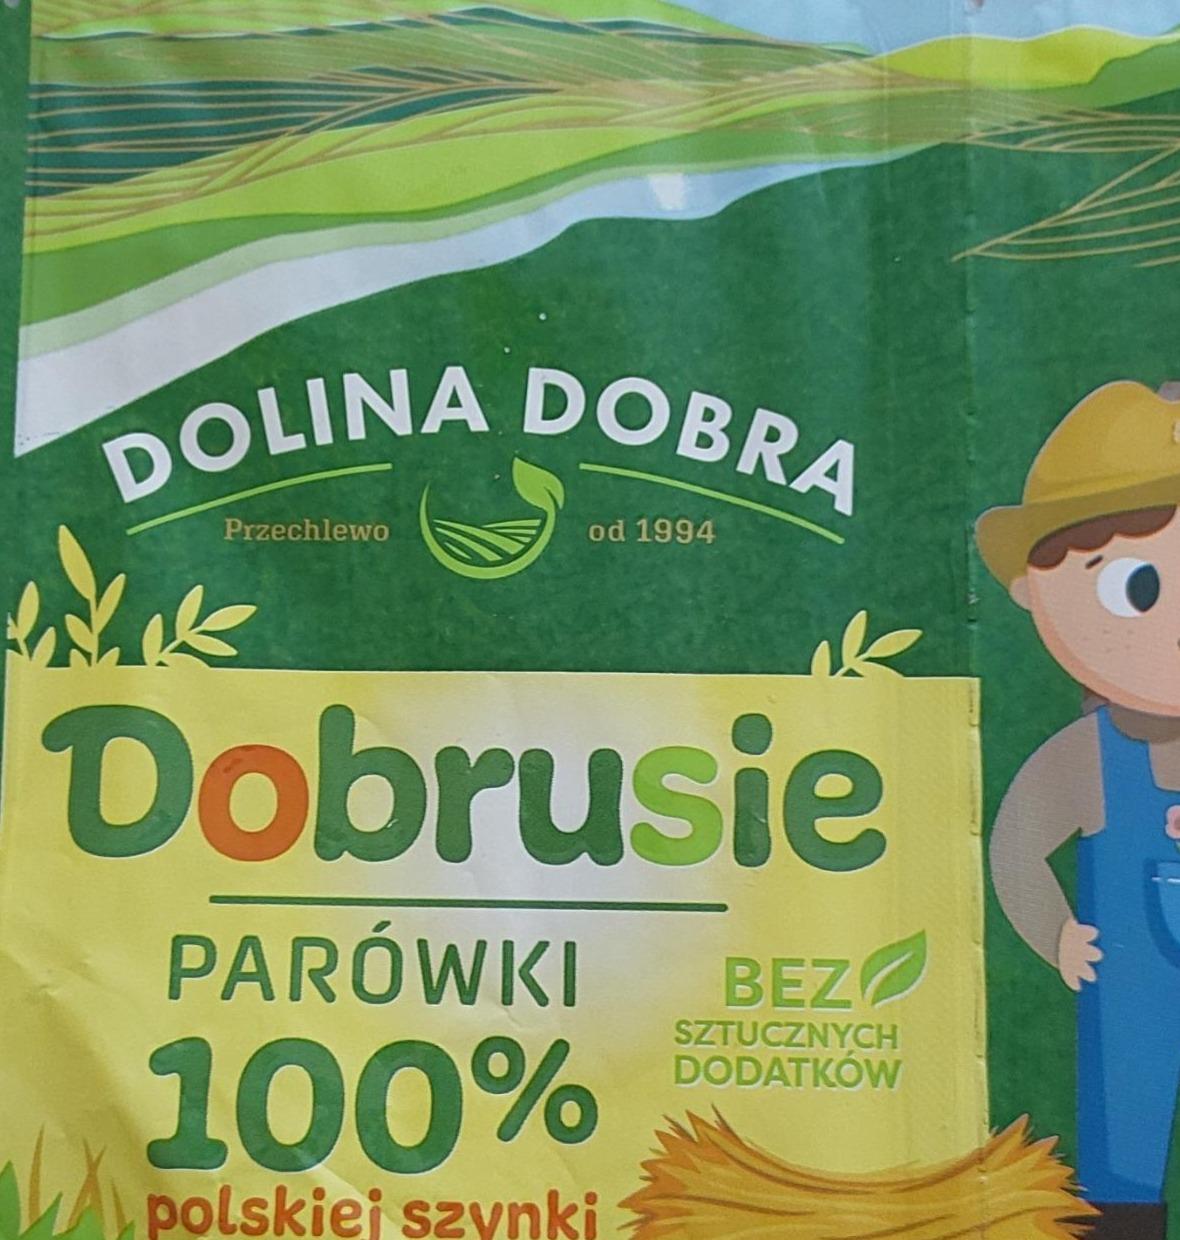 Zdjęcia - Dolina Dobra Dobrusie Parówki 100 % polskiej szynki 160 g (2 x 80 g)